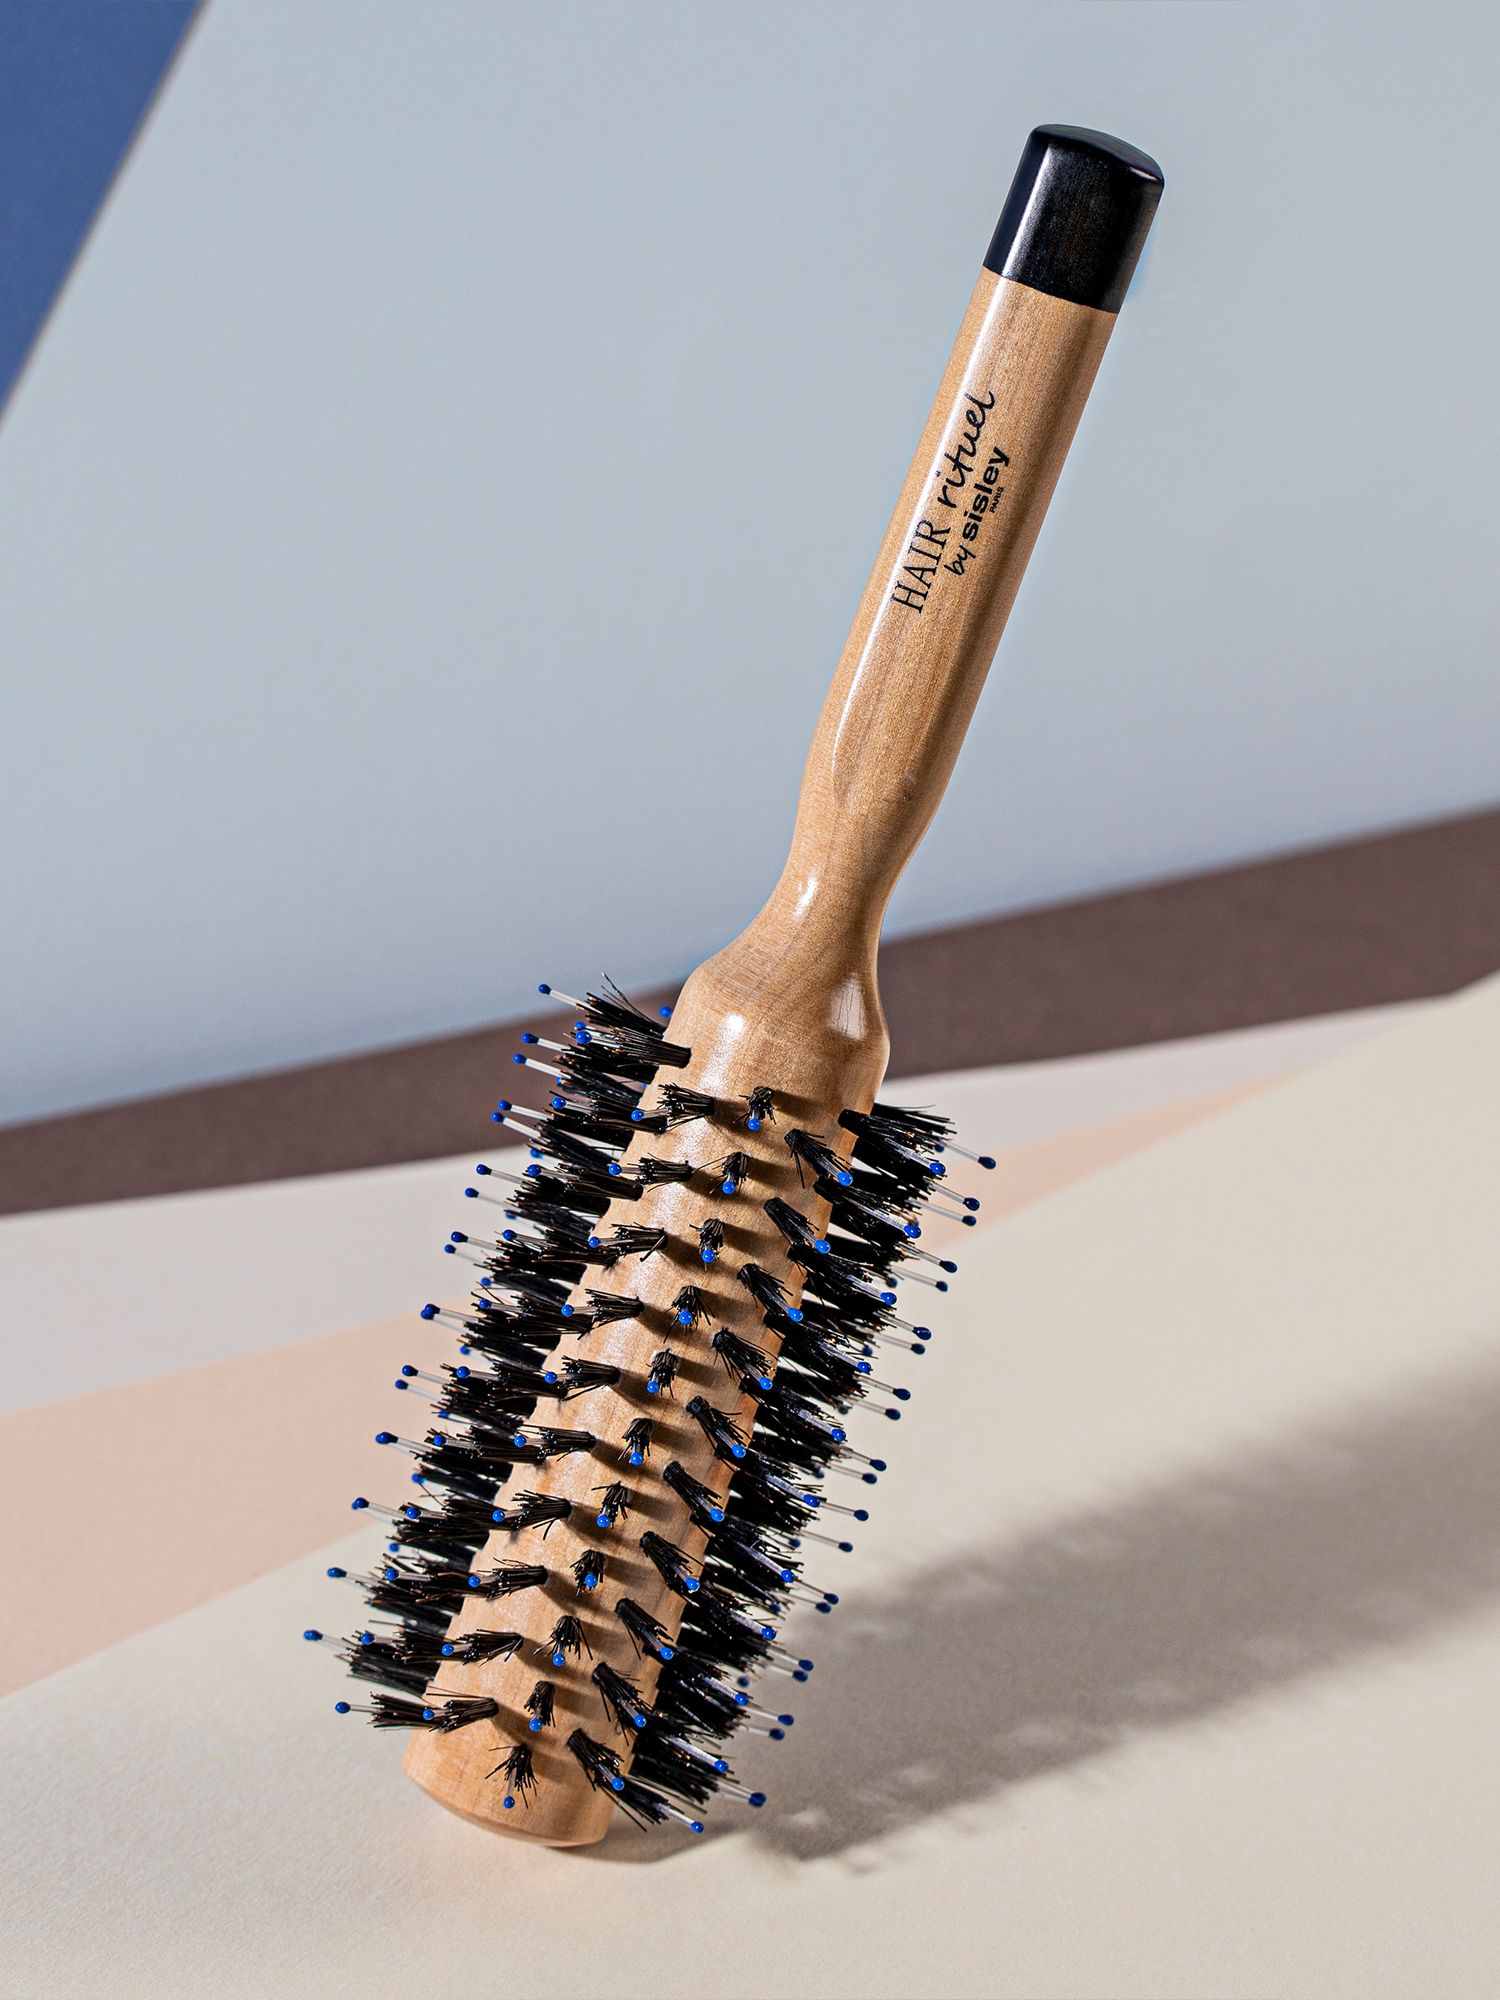 Sisley-Paris Hair Rituel Brush for Thin/Damaged Hair 3